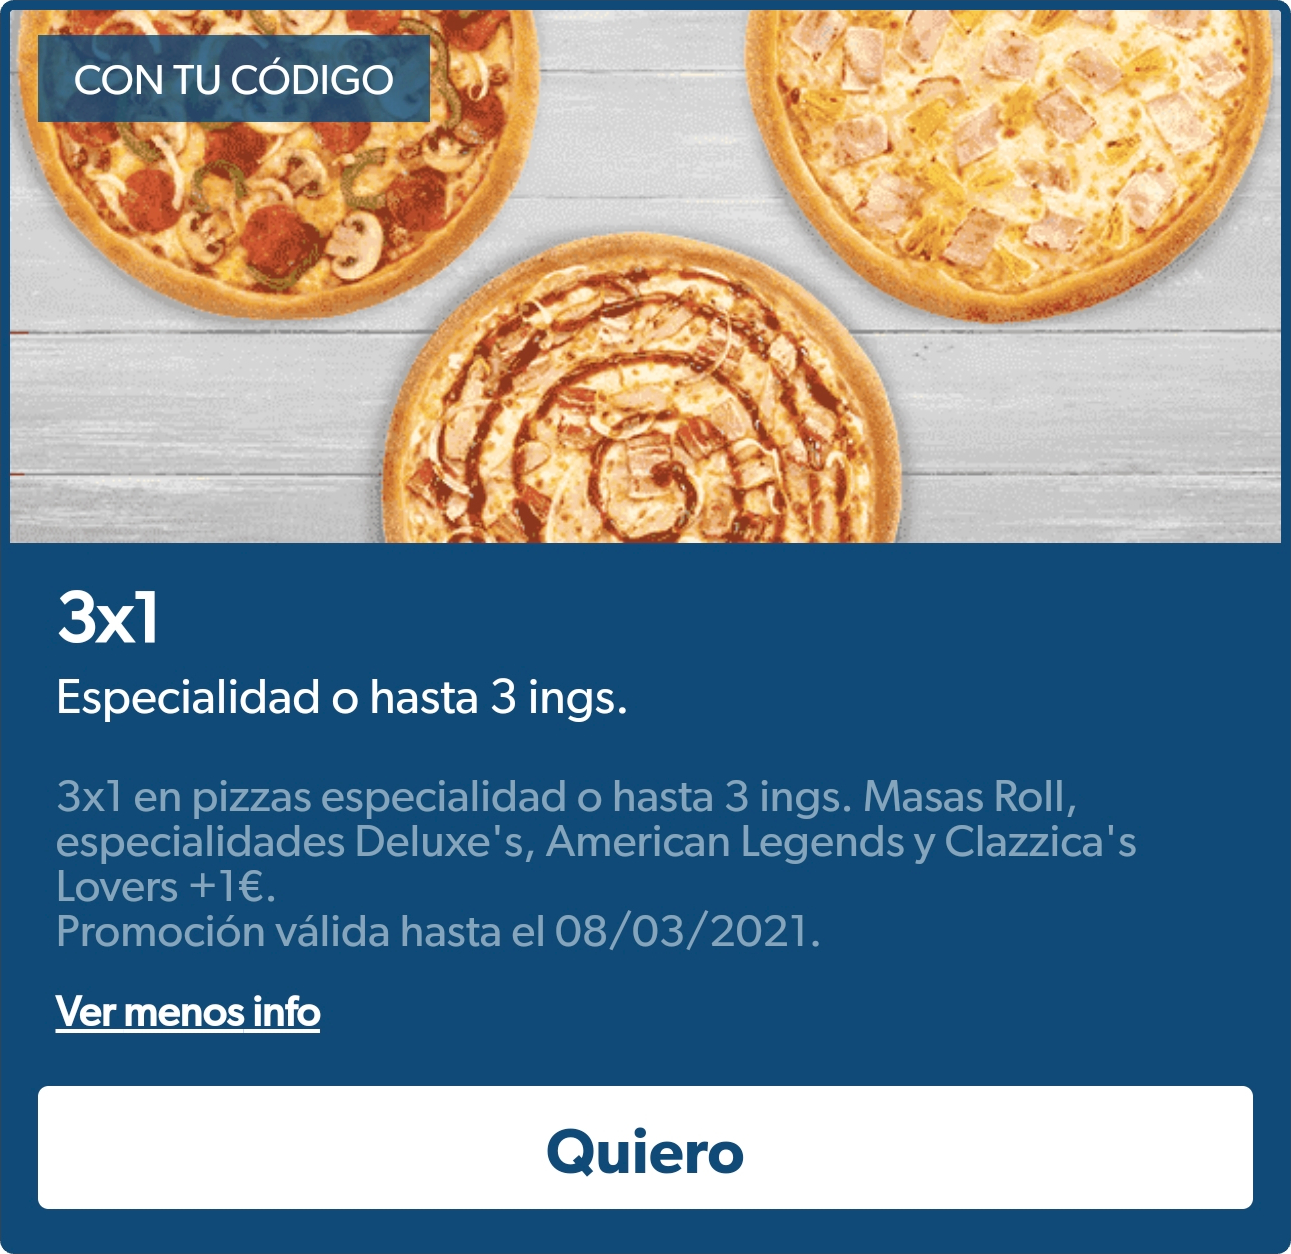 3x1 en pizzas especialidad o hasta 3 ingredientes o margaritas a partir de 4 ingredientes a domicilio en Domino's Pizza (en la App)